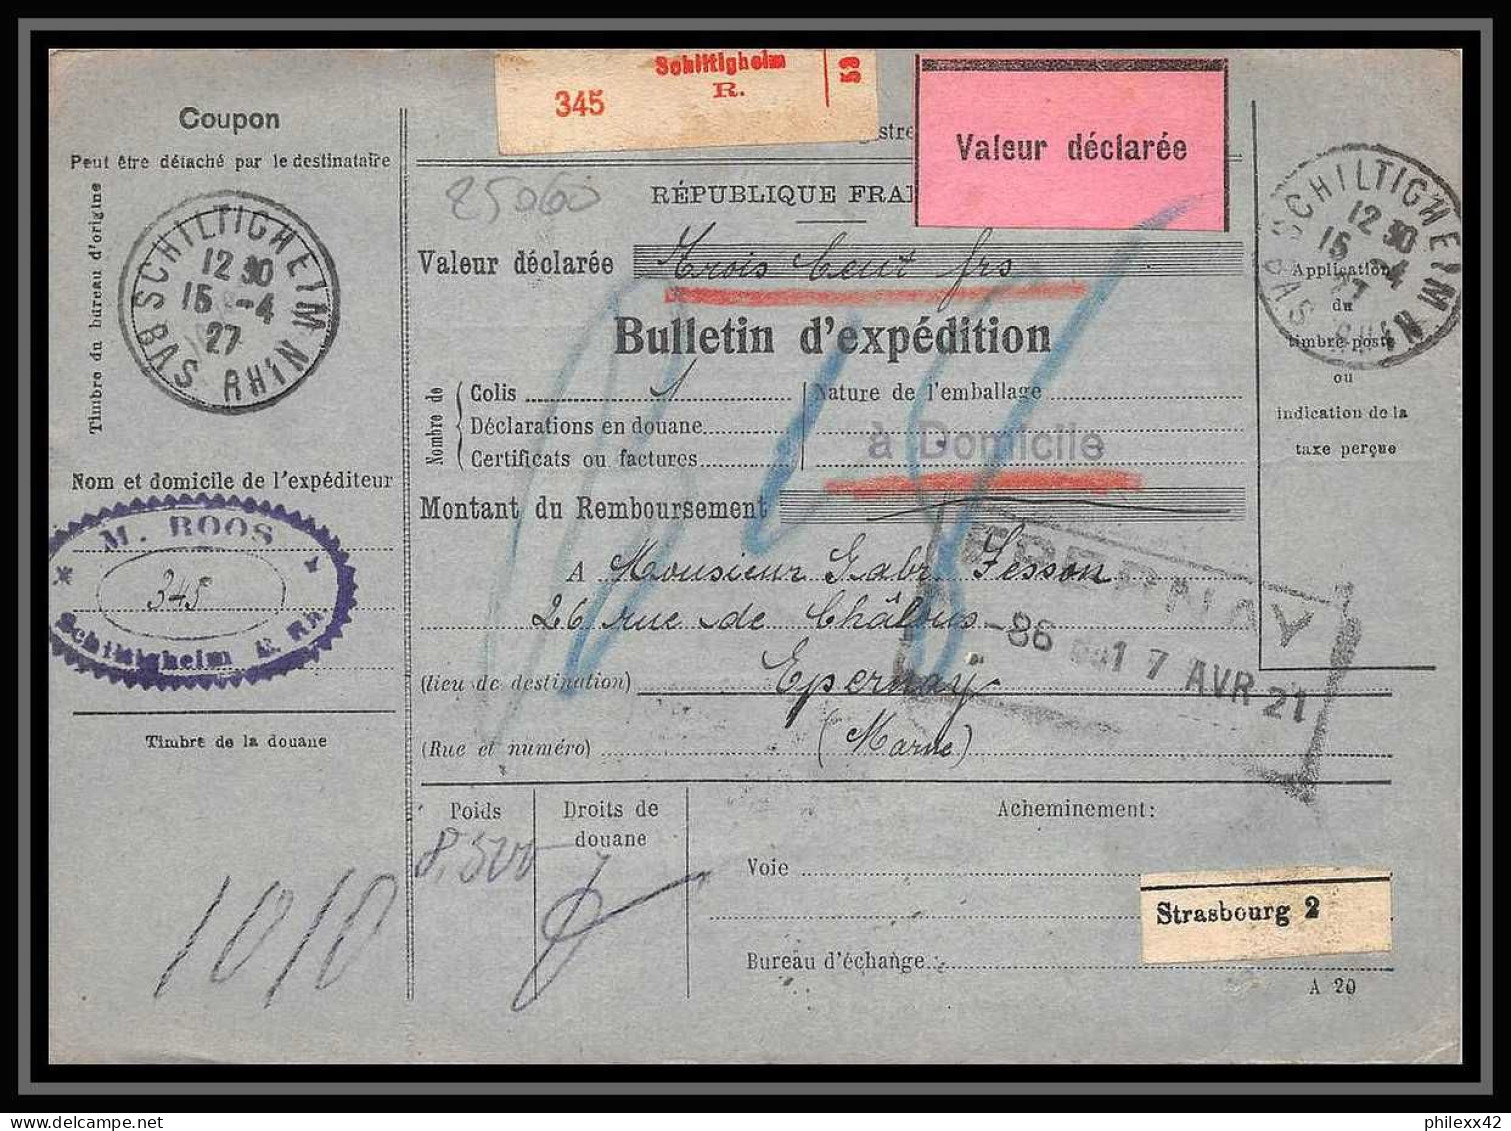 25060 Bulletin D'expédition France Colis Postaux Fiscal Haut Rhin 1927 Schiltigheim Merson 123+145 Valeur Déclarée - Lettres & Documents